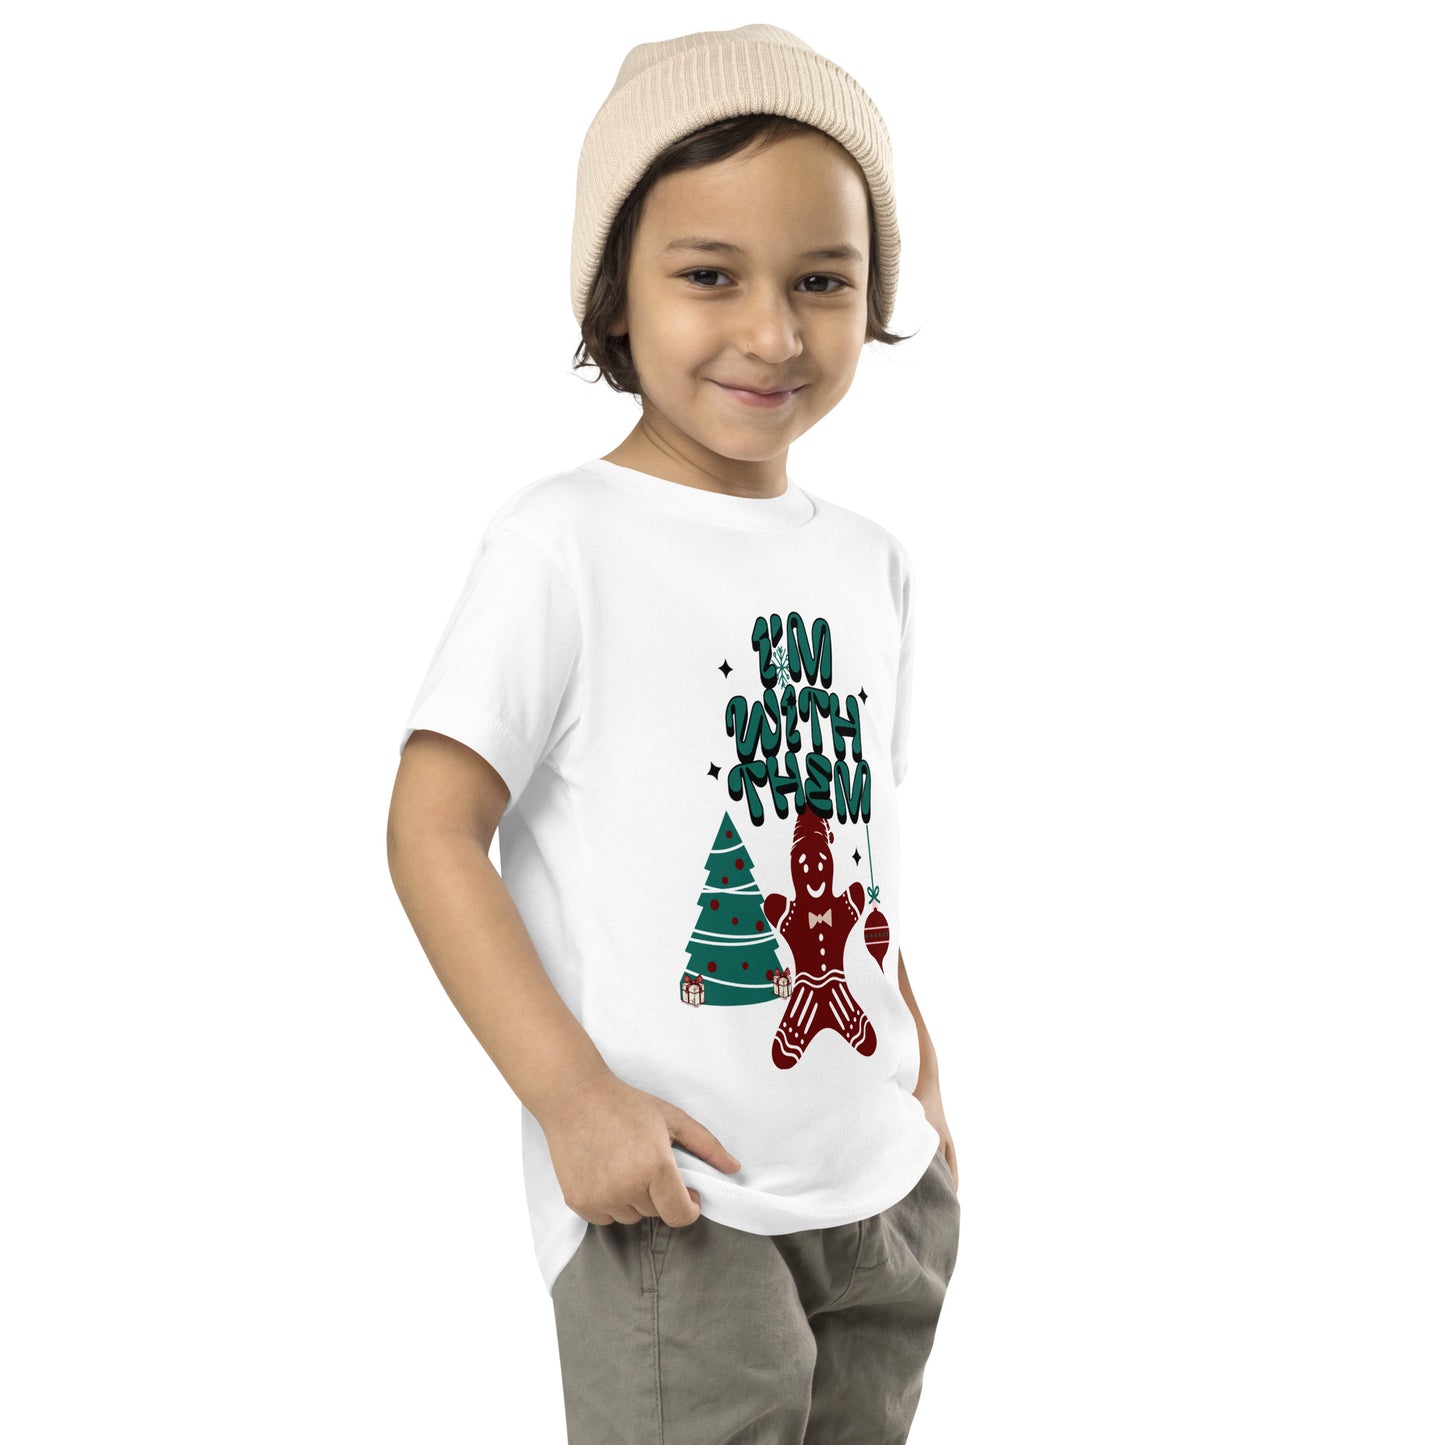 Camiseta navideña para niños pequeños: ¡ESTOY CON ELLOS!